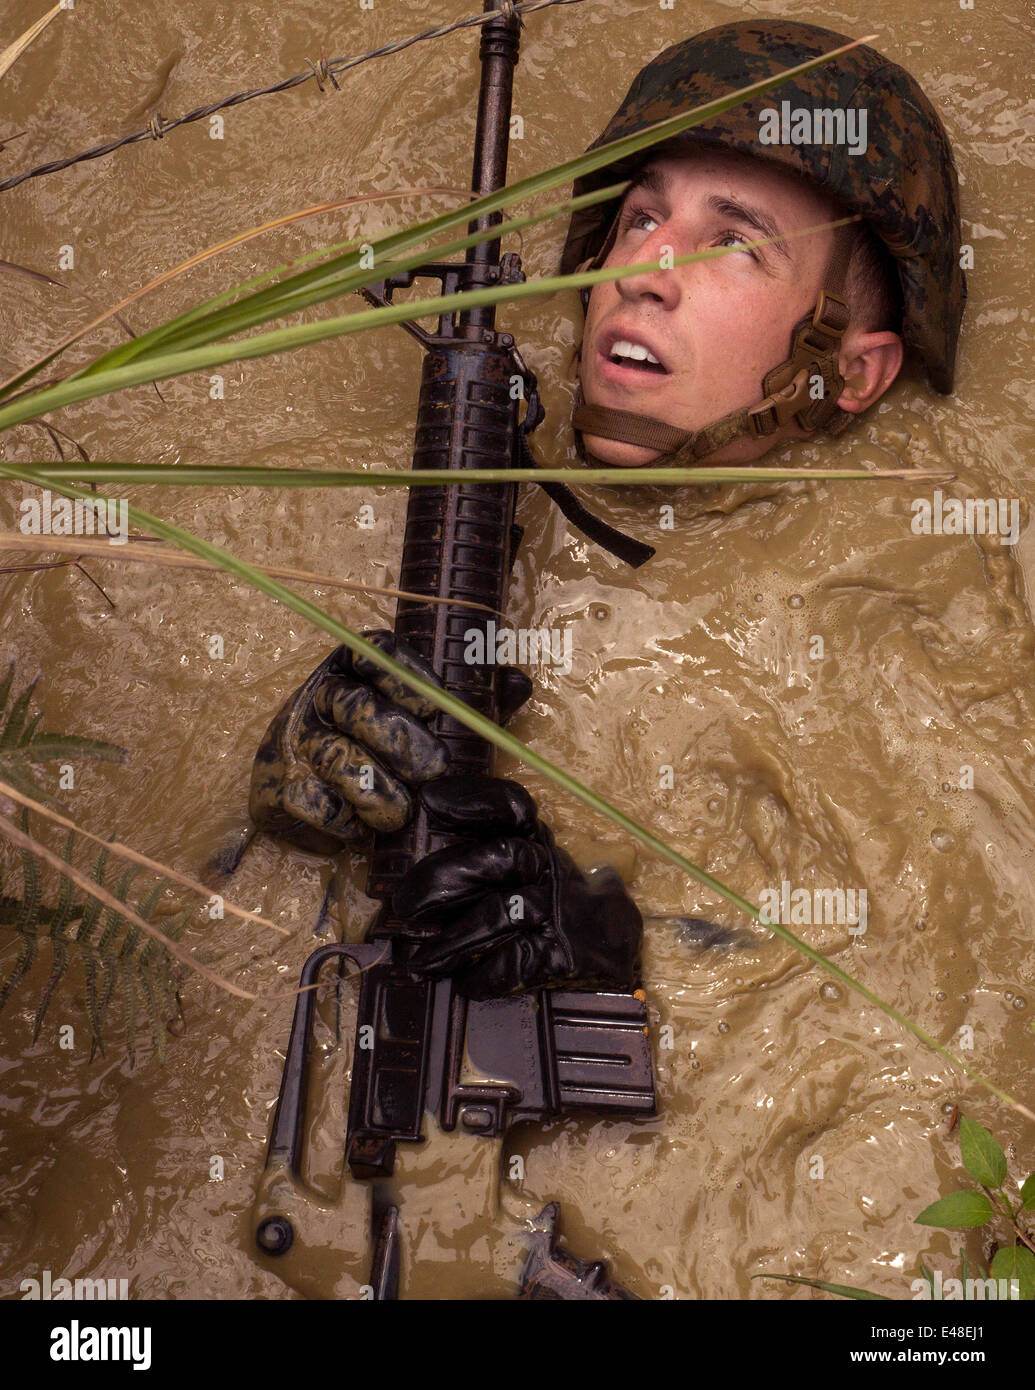 Un marine estadounidense flotan en el estancamiento de agua fangosa como él evita la alambrada plegable durante la selva endurance curso en el Centro de Entrenamiento de Guerra en la Selva de Camp Gonsalves Junio 20, 2014 en Okinawa, Japón. Foto de stock